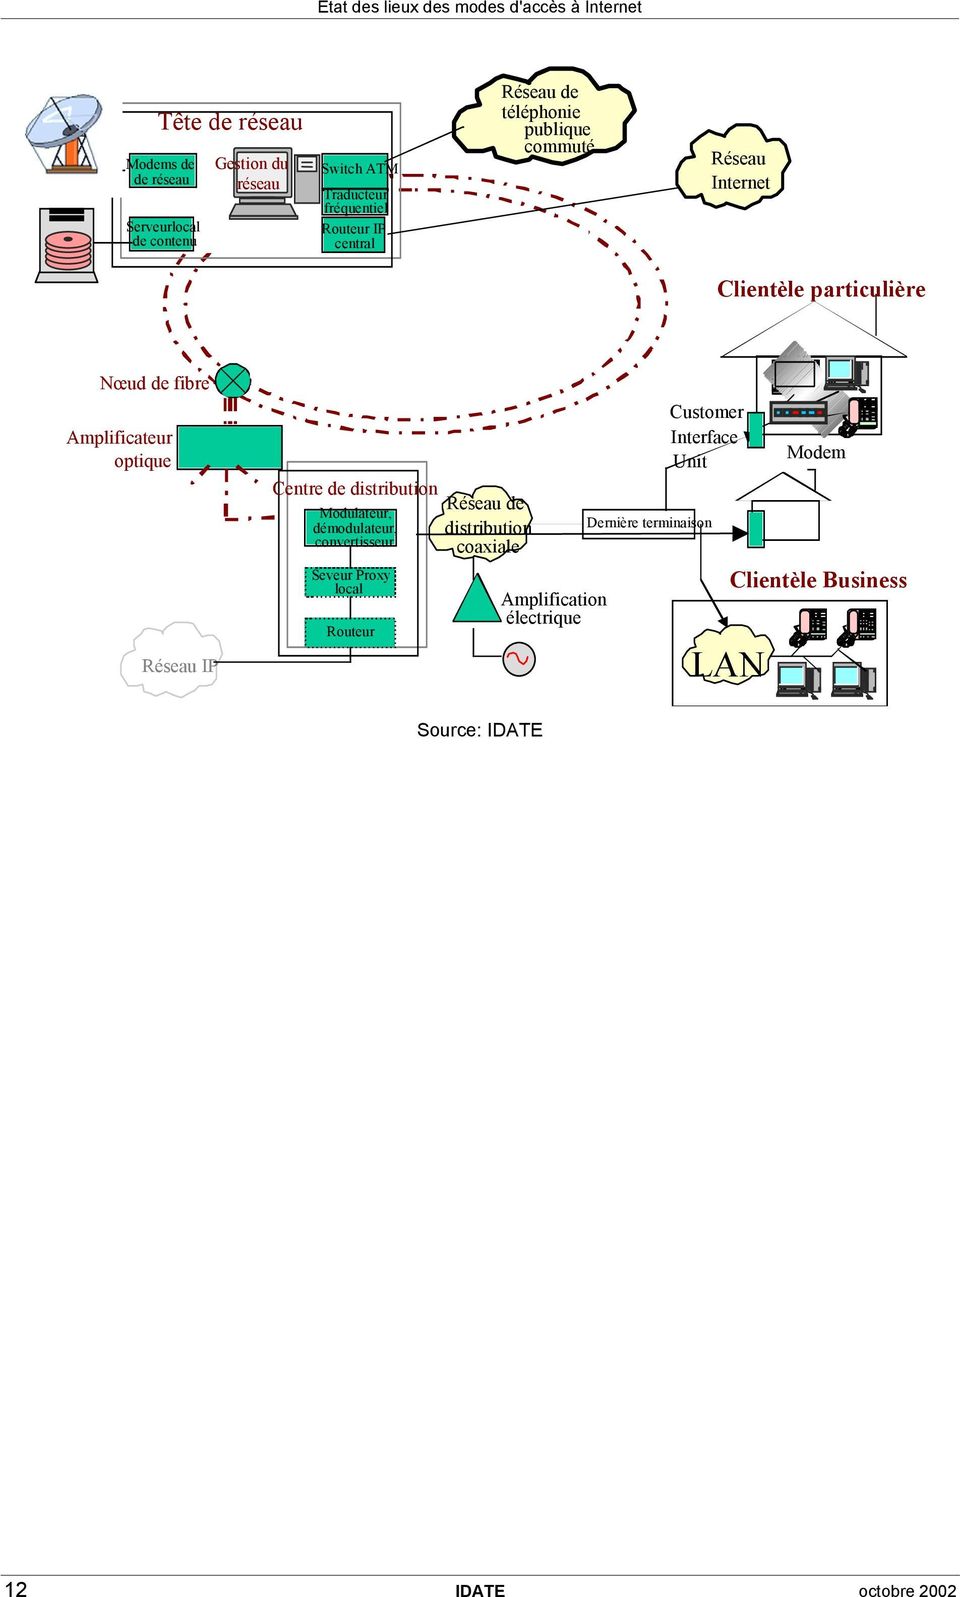 IP Centre de distribution Modulateur, démodulateur, convertisseur Seveur Proxy local Routeur Réseau de distribution coaxiale